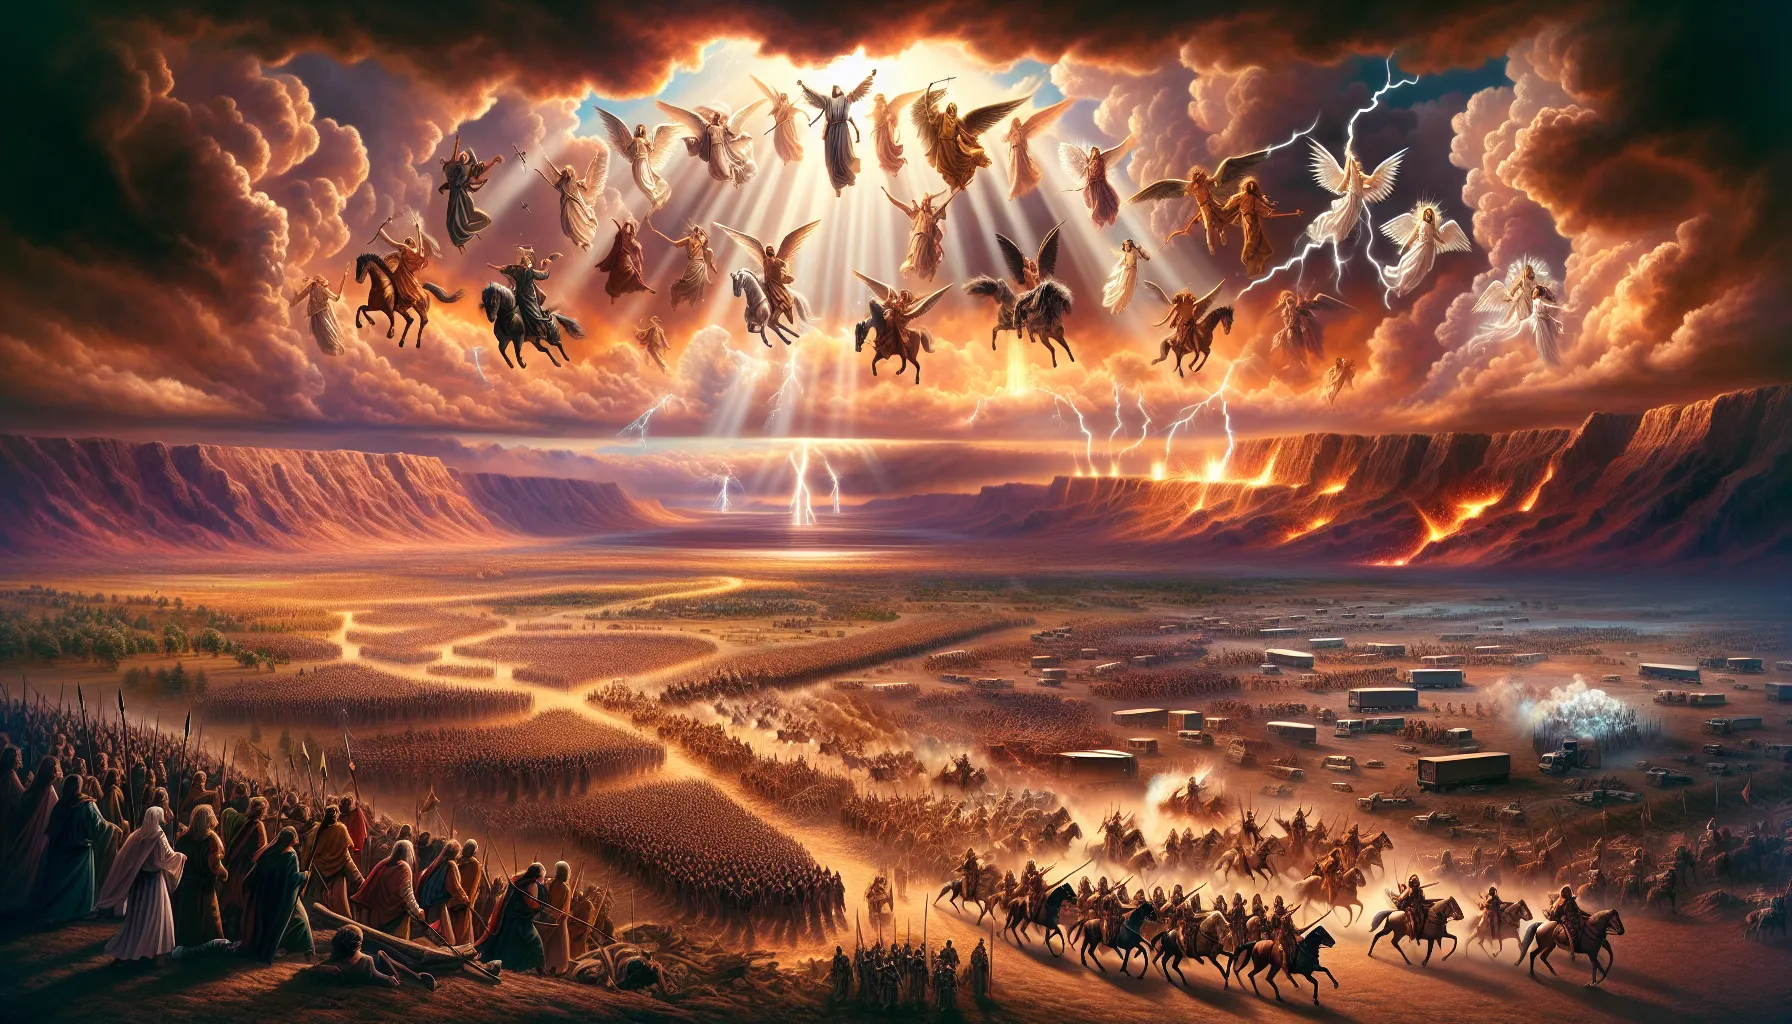 Imagen ilustrativa de una representación artística de la Batalla de Armagedón según la Biblia.